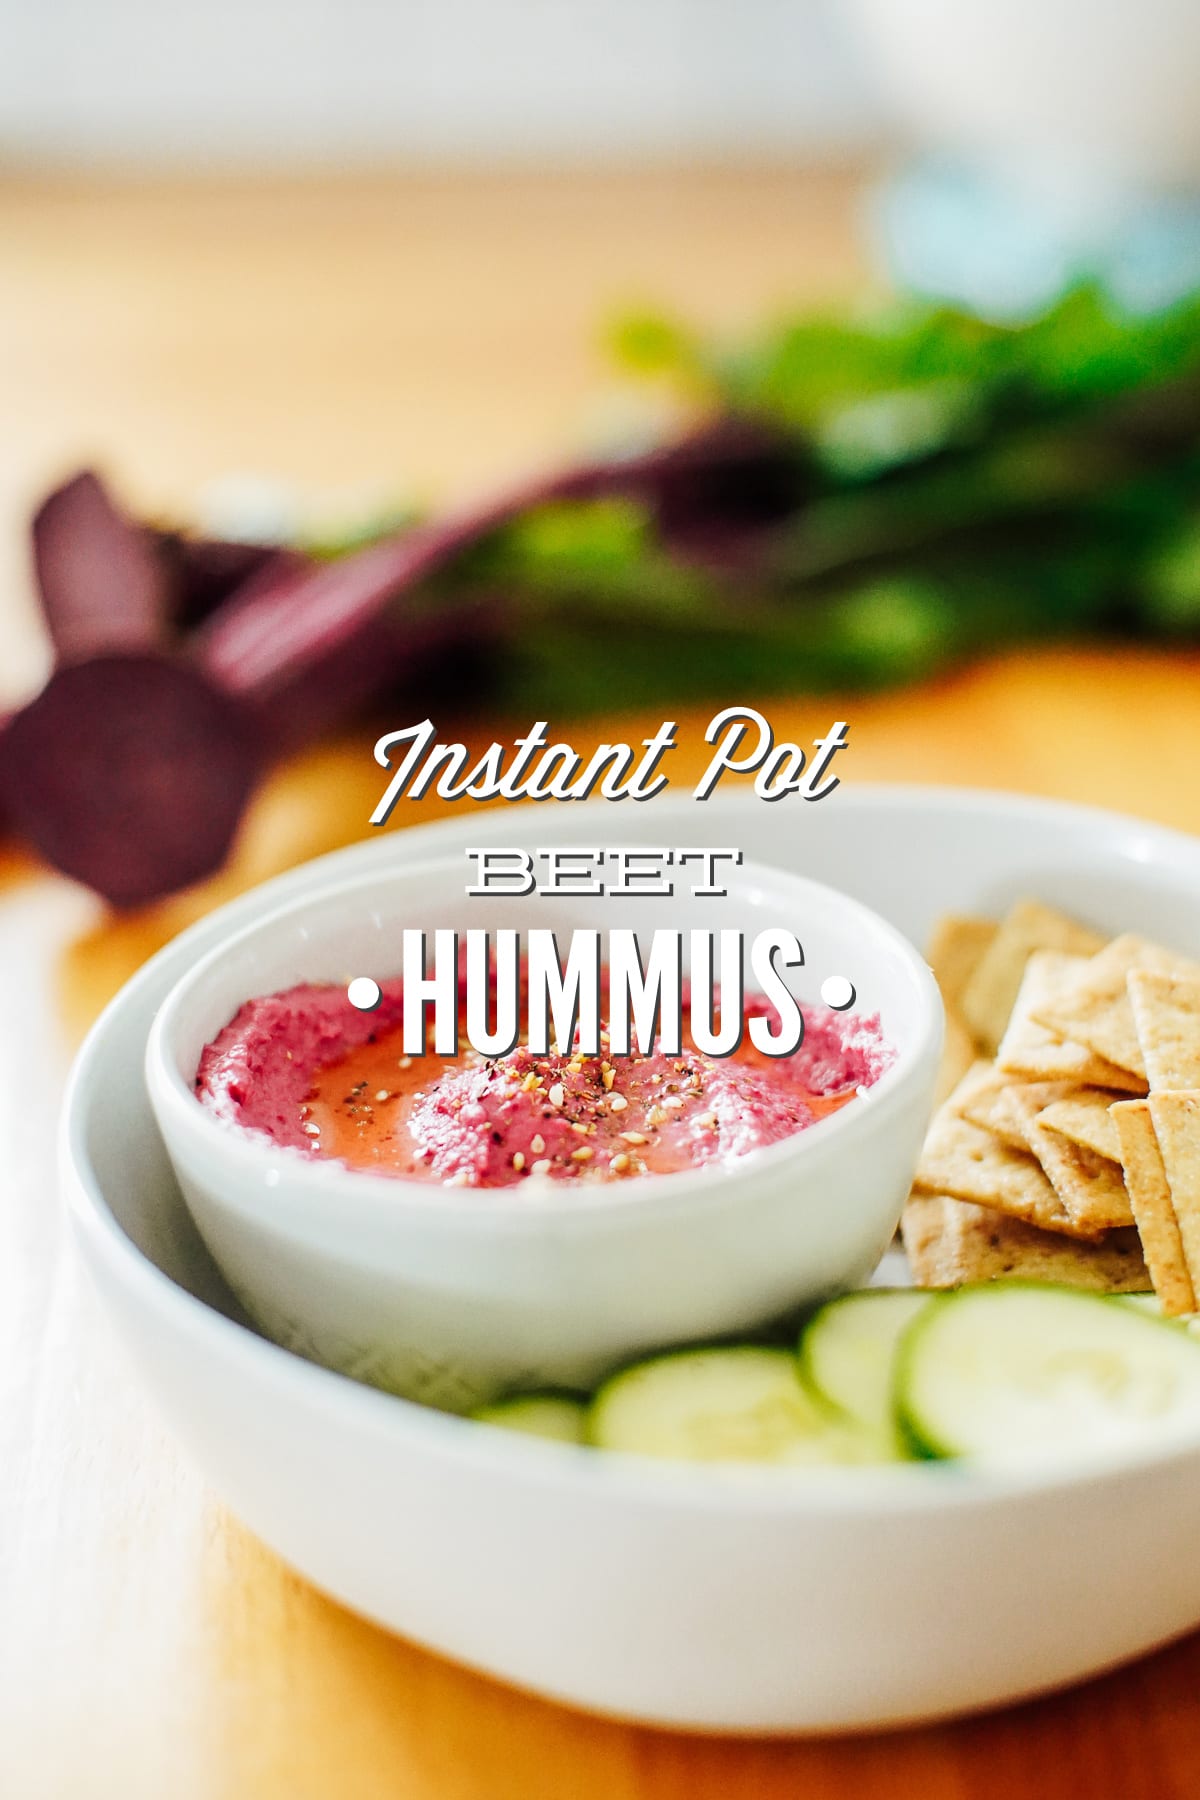 Roasted Beet Hummus: The Pink, Vegetable-Based Hummus Kids Love